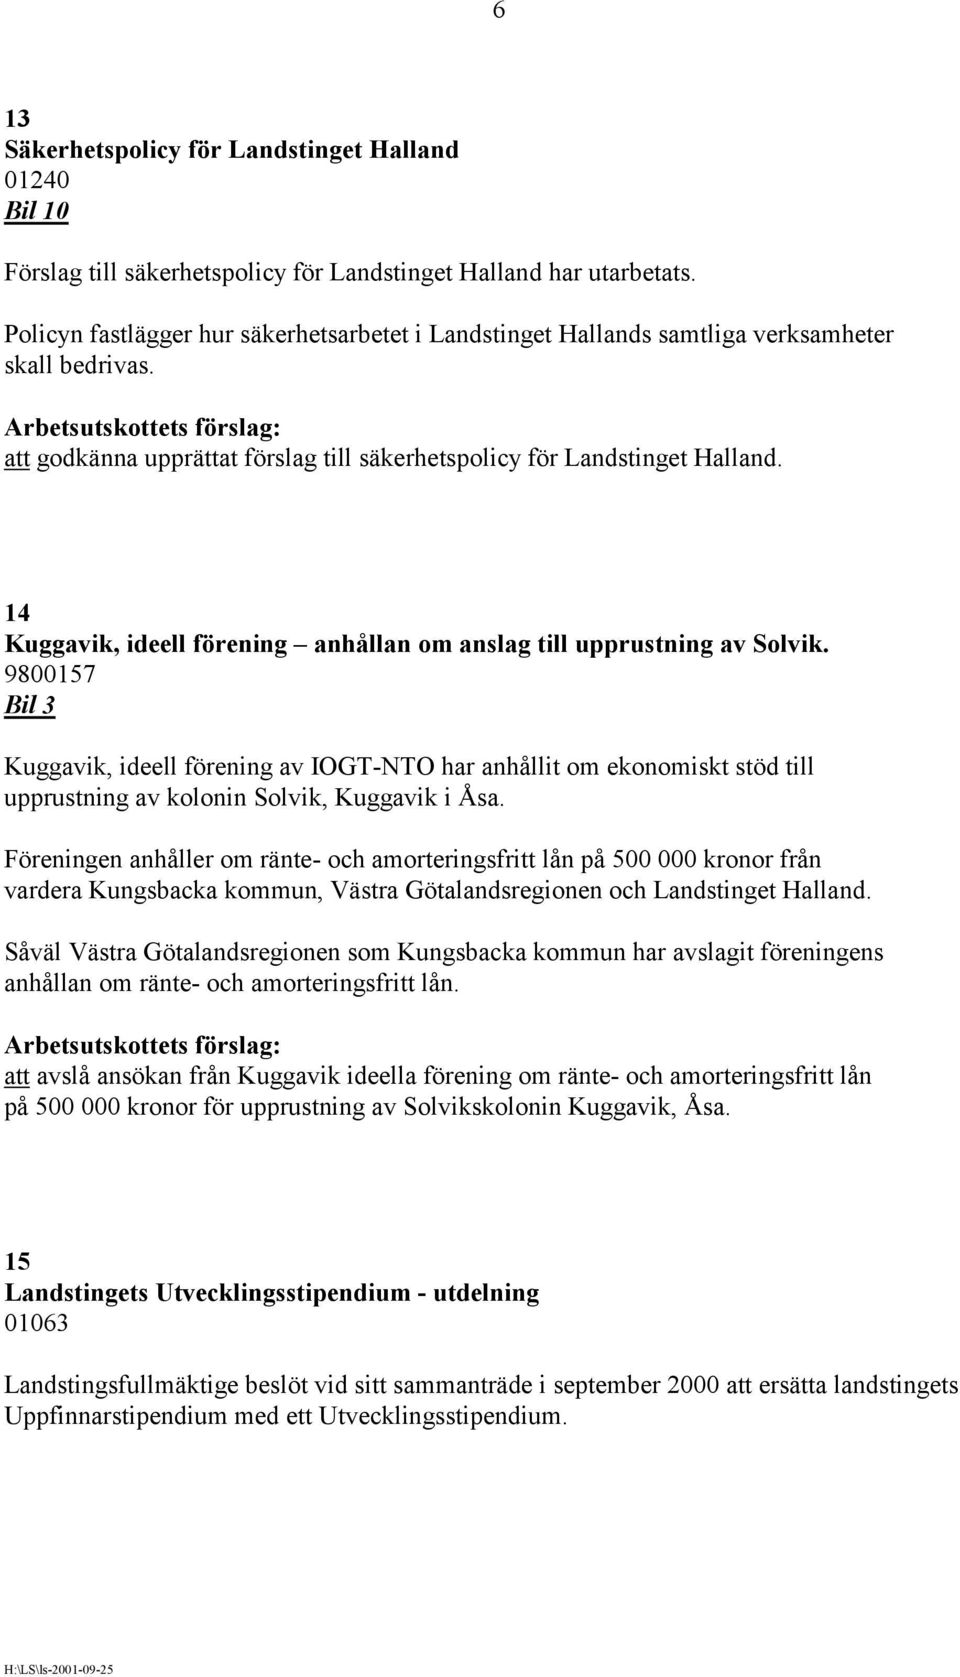 14 Kuggavik, ideell förening anhållan om anslag till upprustning av Solvik.